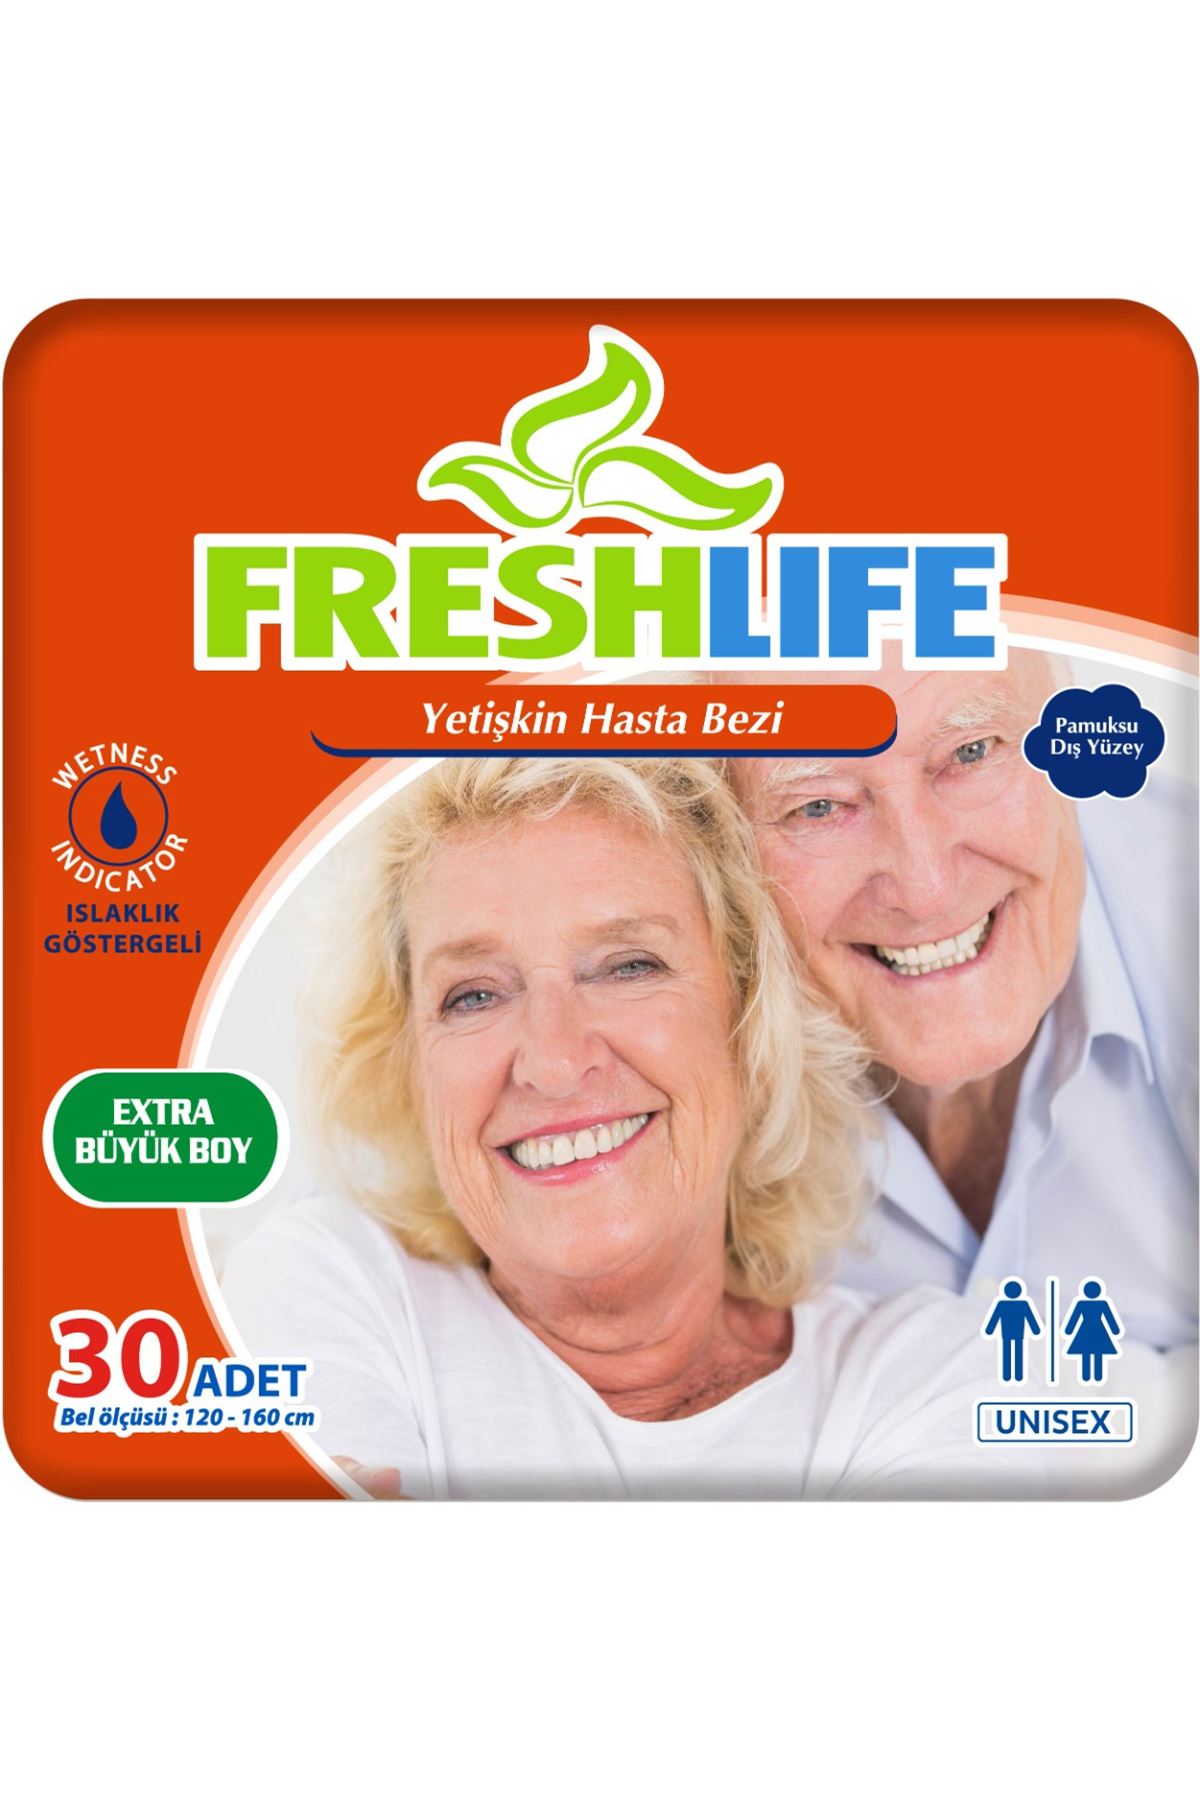 Freshlife Xlarge Yetişkin Hasta Bezi 30 Adet